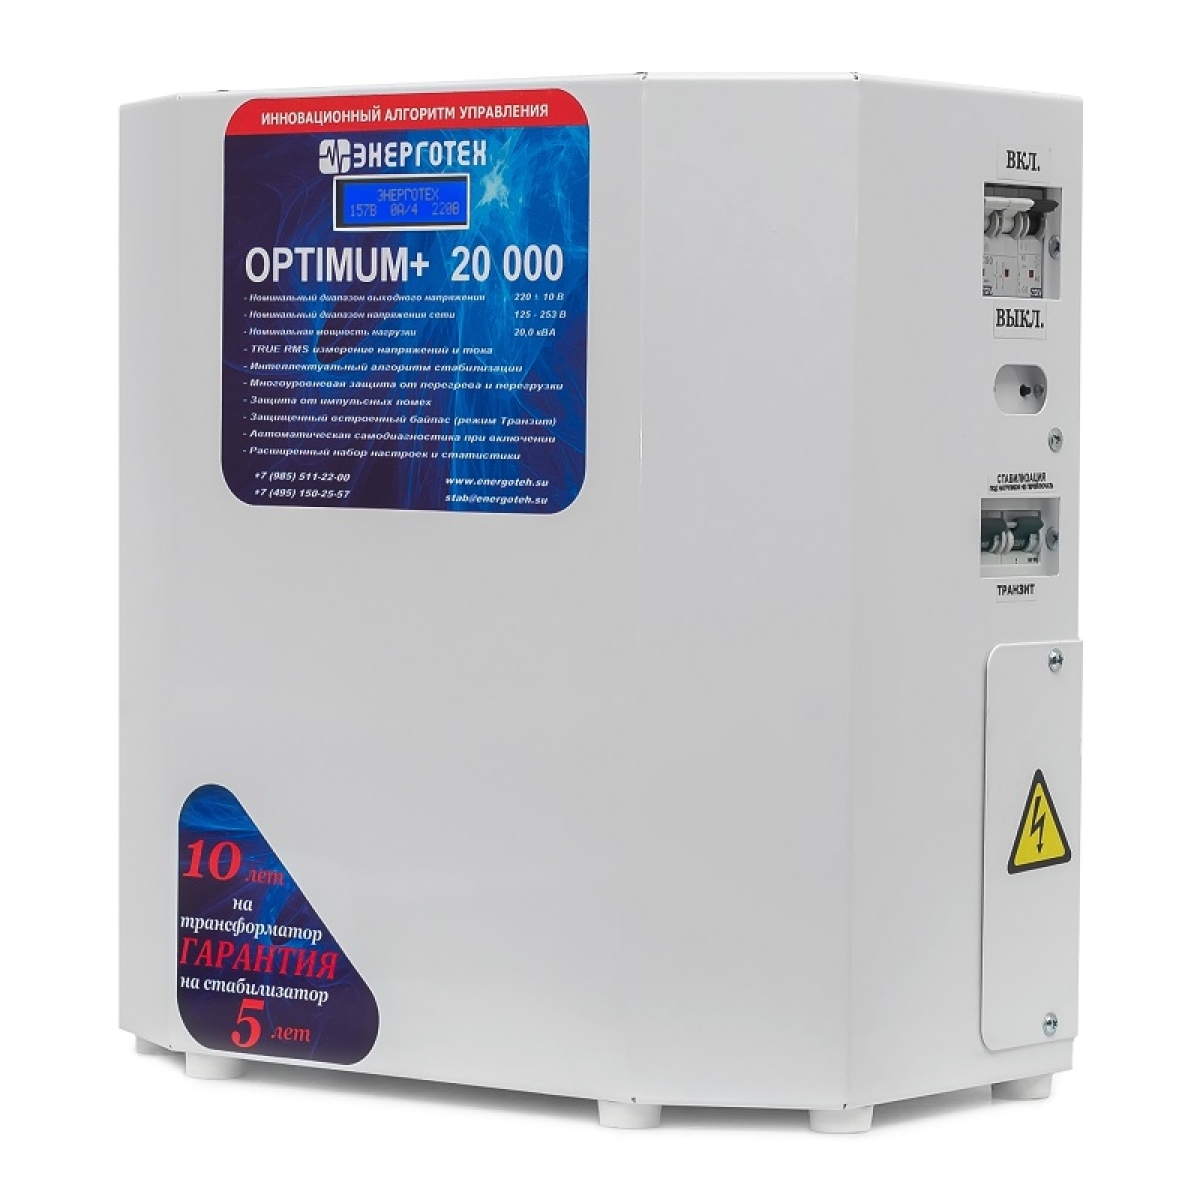 Однофазный стабилизатор Энерготех OPTIMUM+ 20000(HV), вид справа